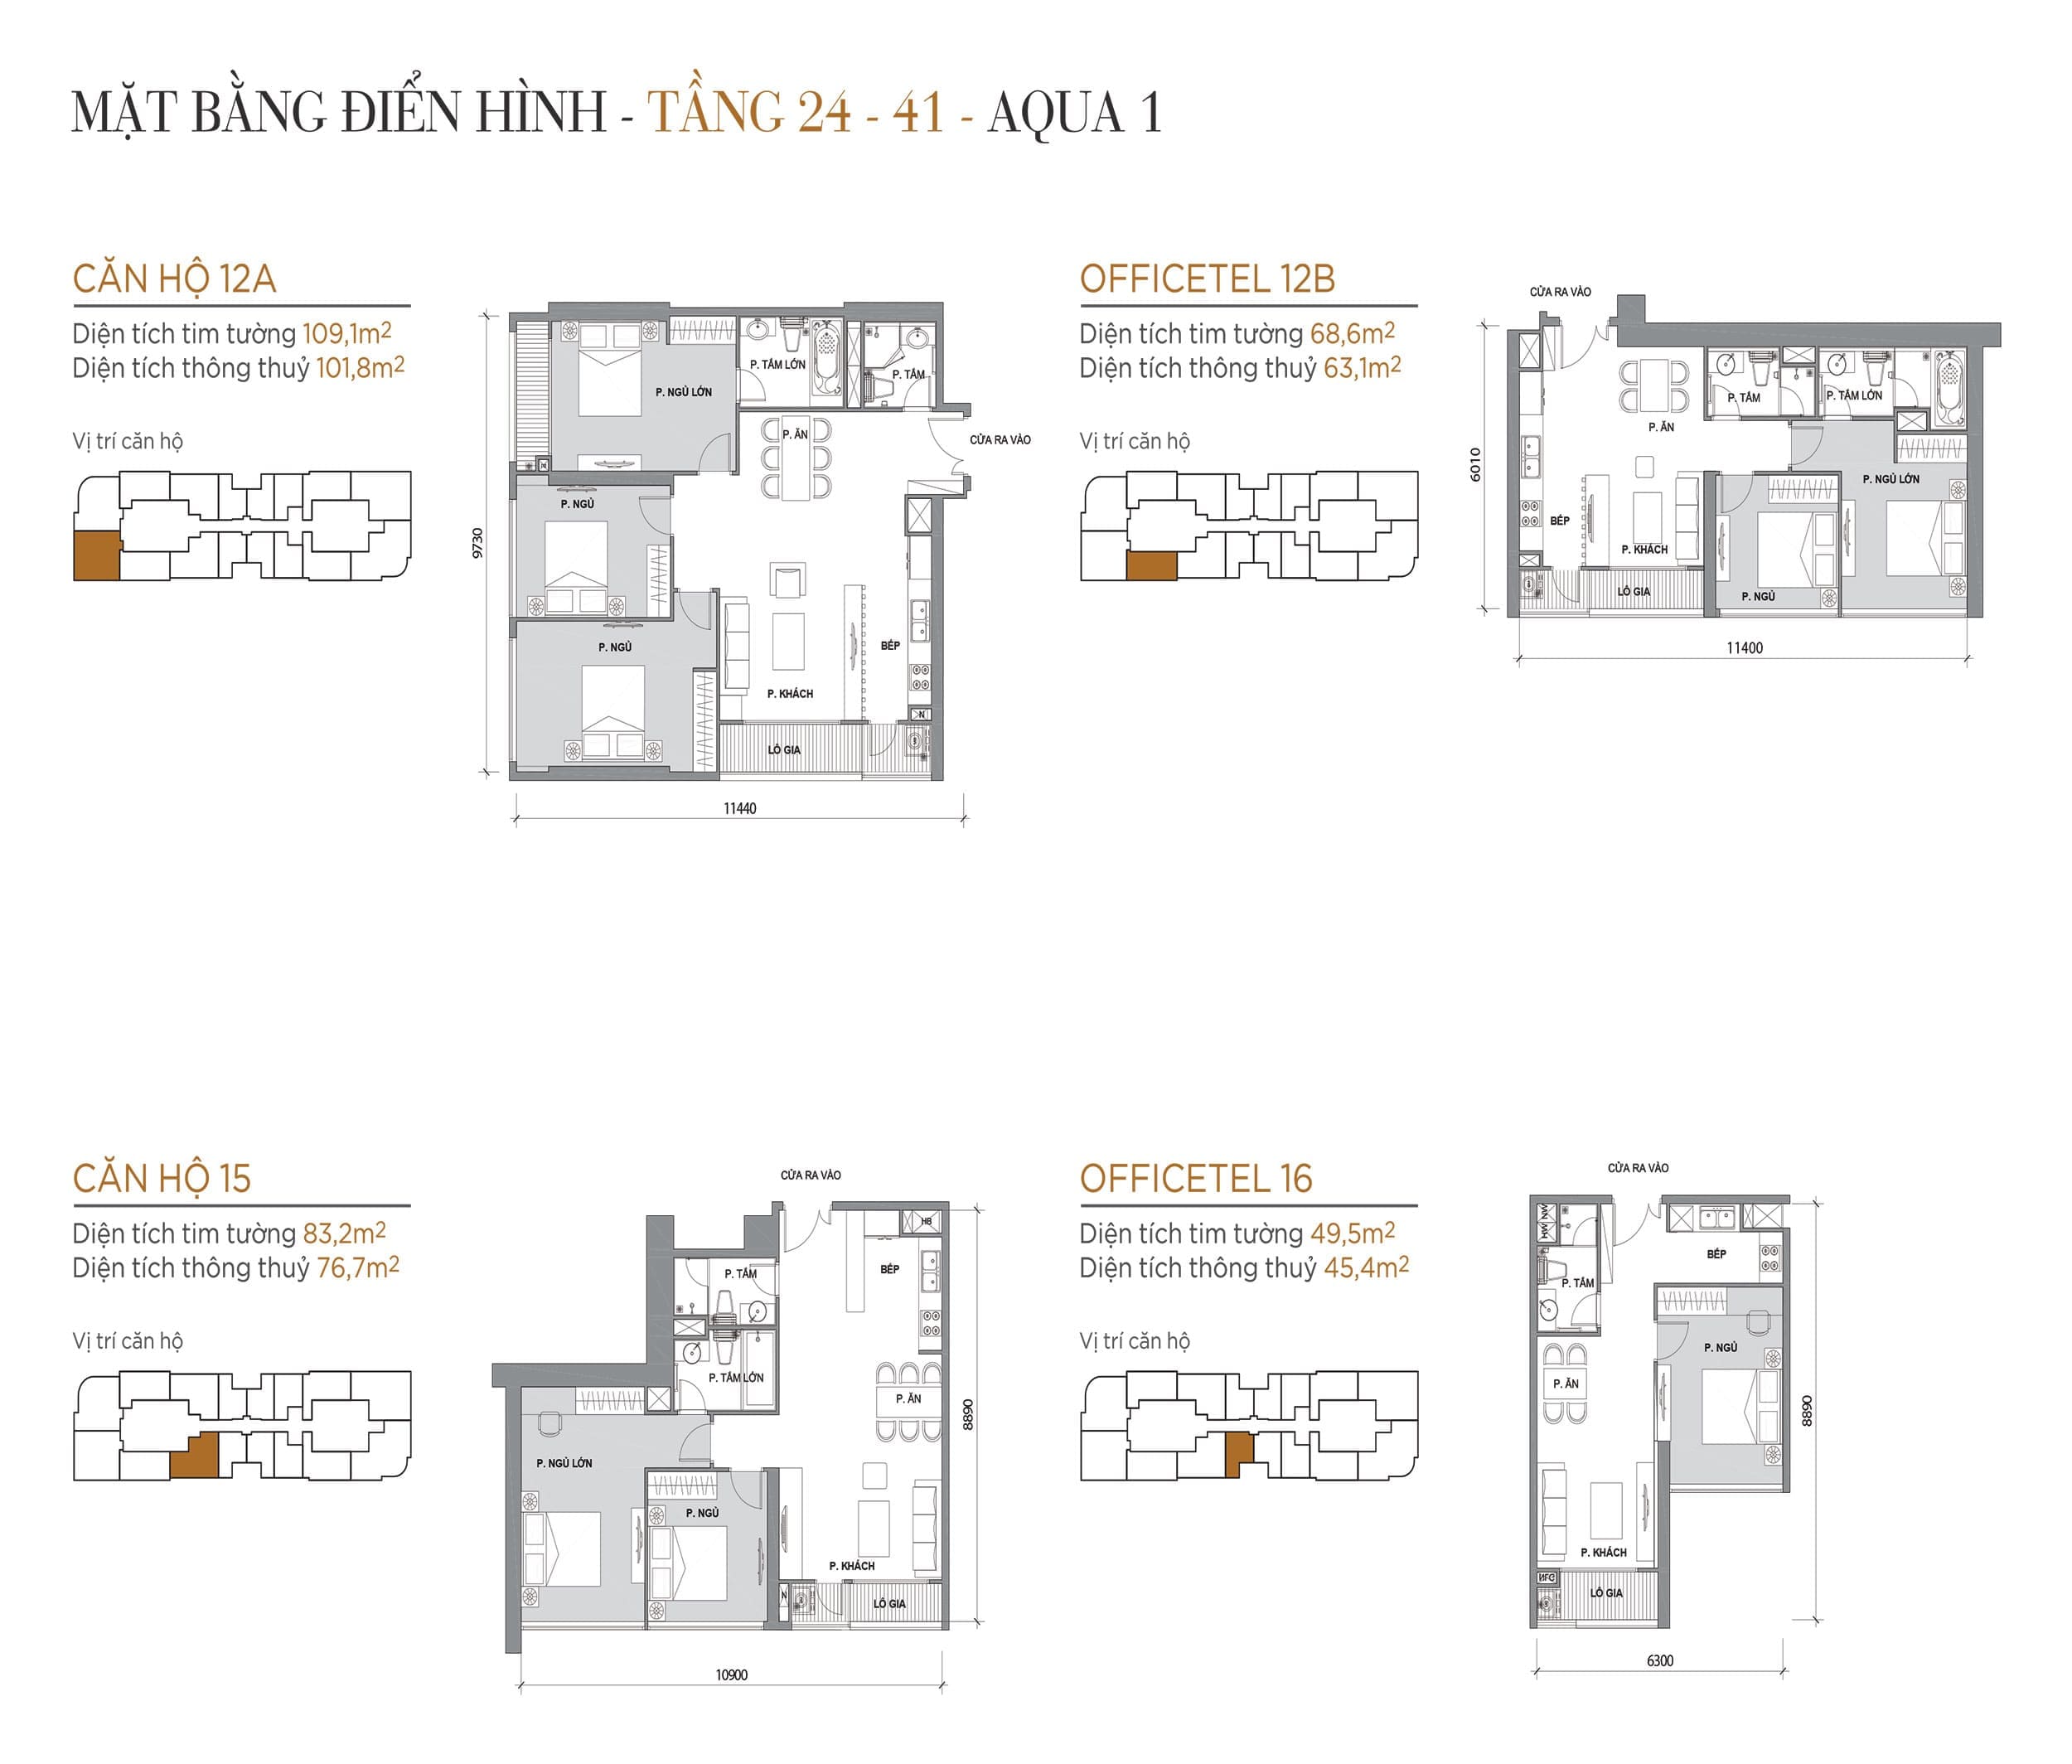 Layout căn hộ tầng 24 đến tầng 41 tòa Aqua 1 loại Căn hộ 12A, Officetel 12B, Căn hộ 15, Officetel 16.